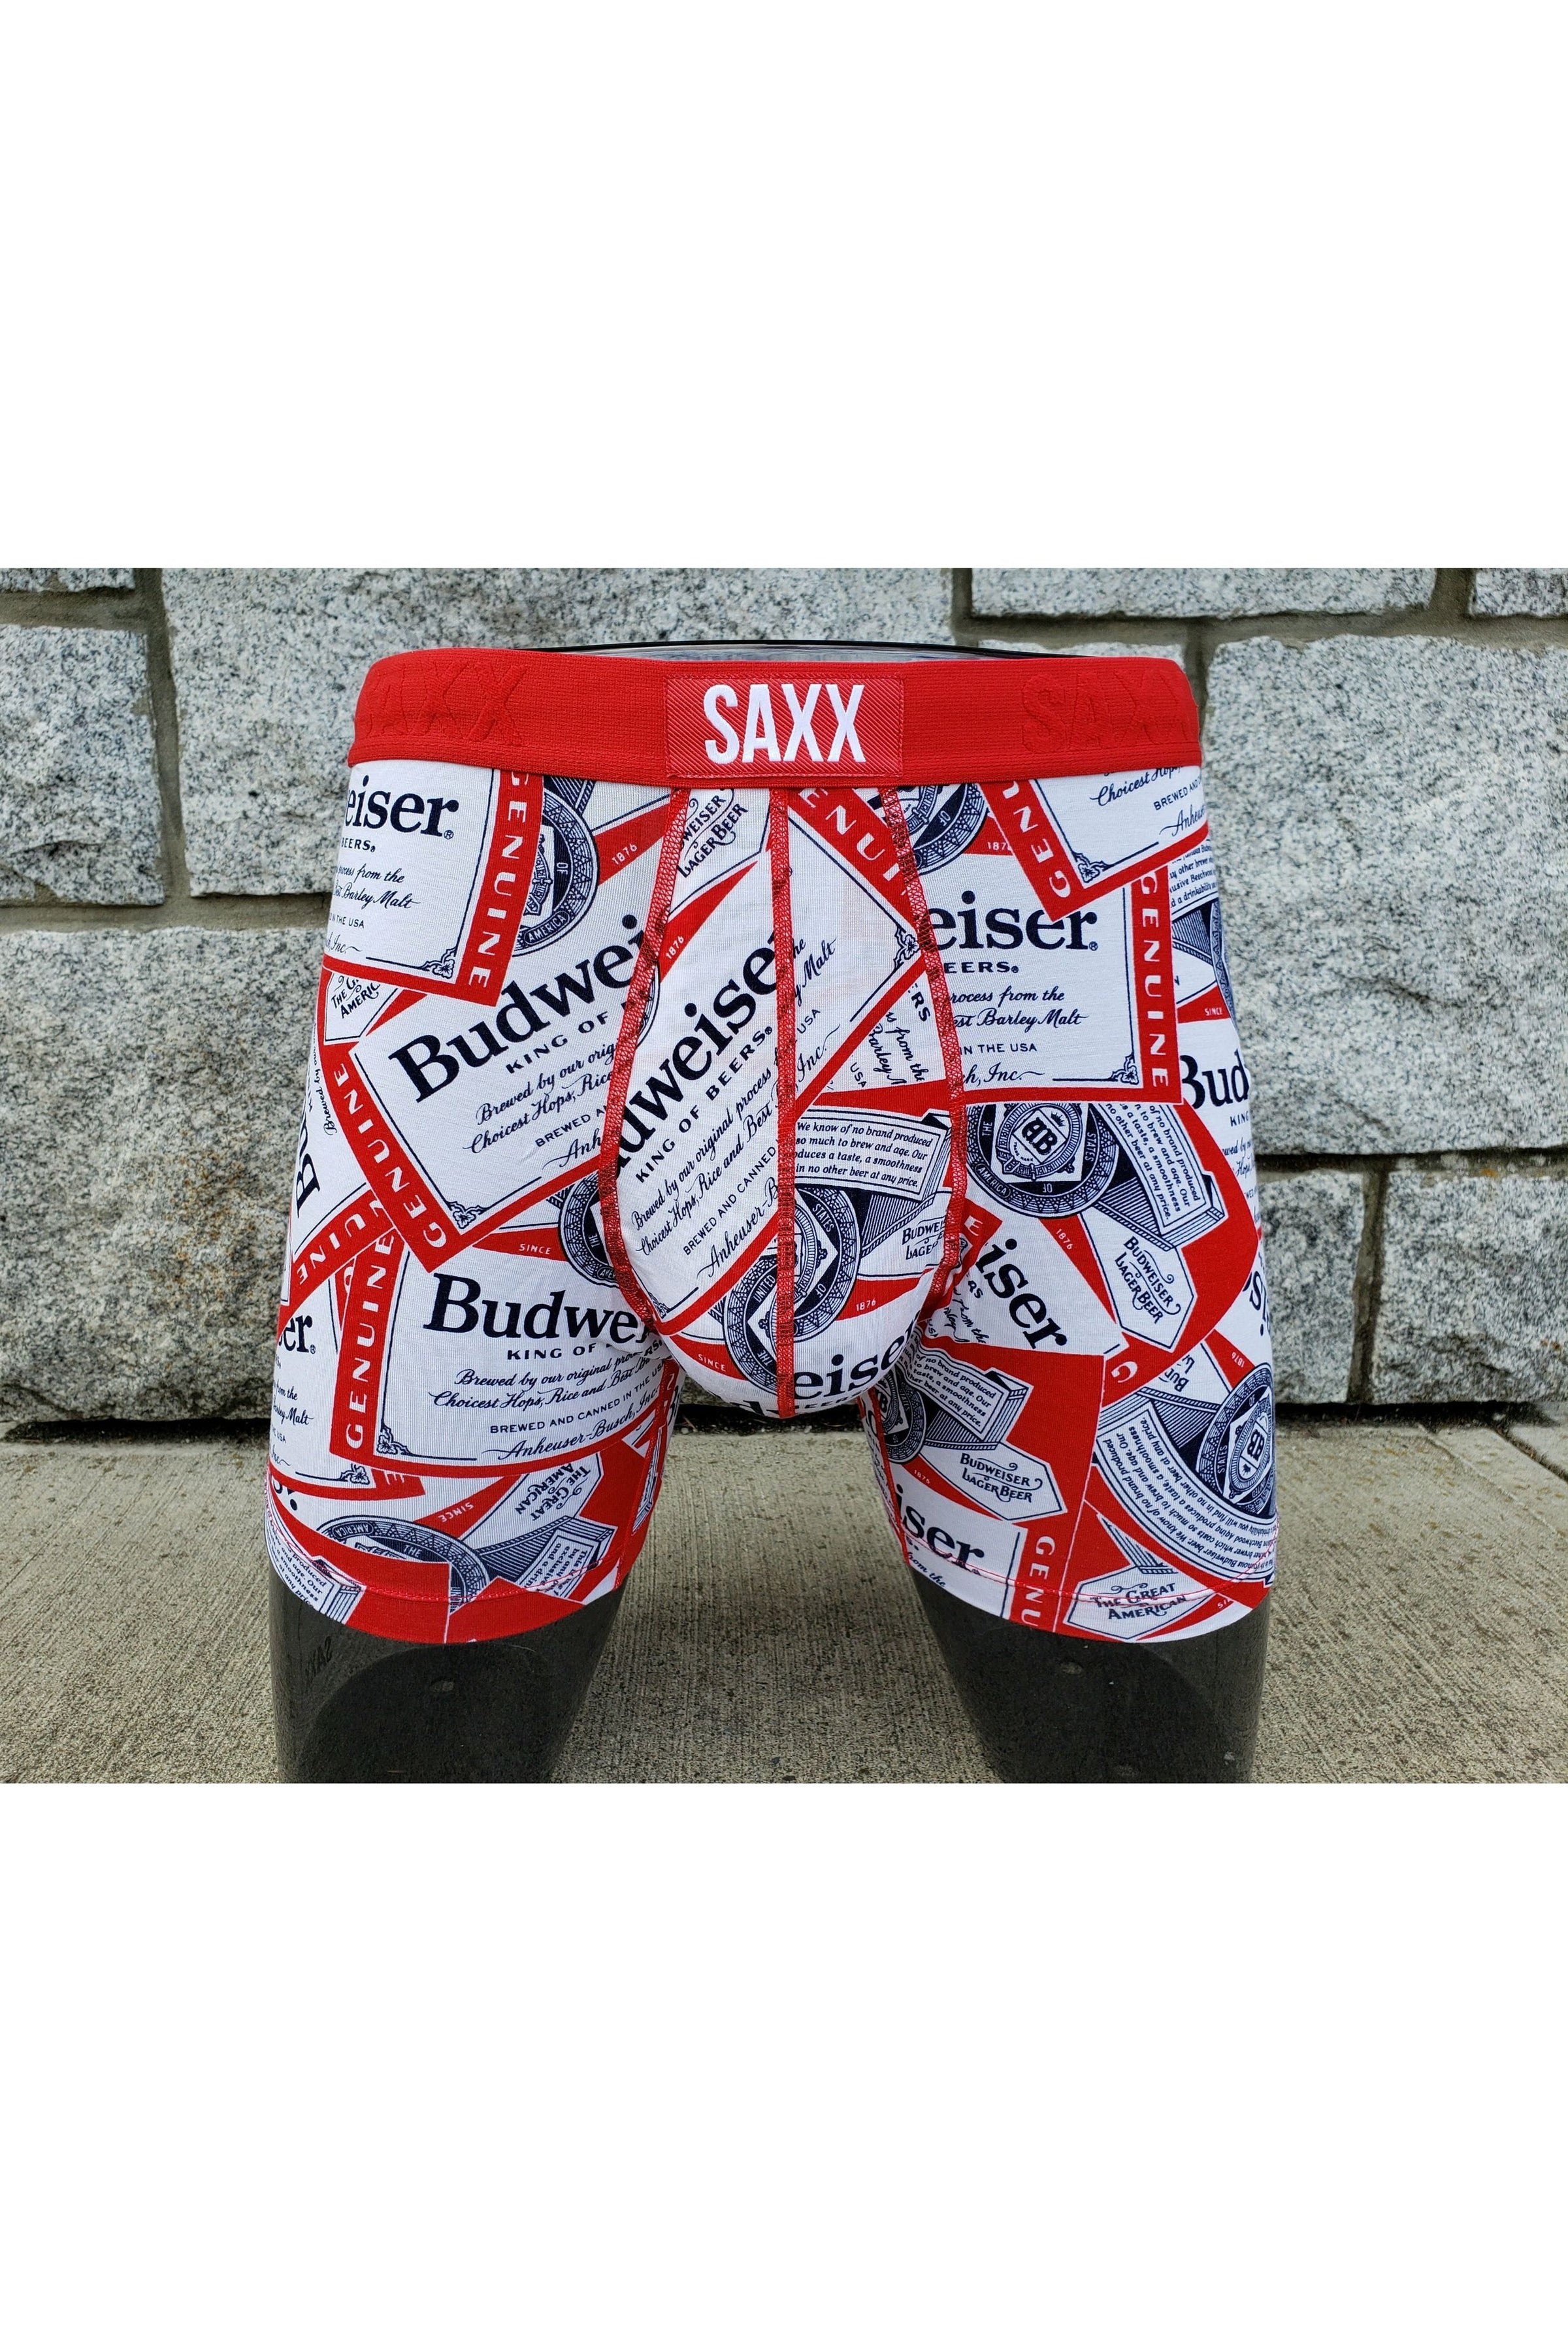 Saxx Underwear Vibe Boxer Brief #SXBM35 - In the Mood Intimates